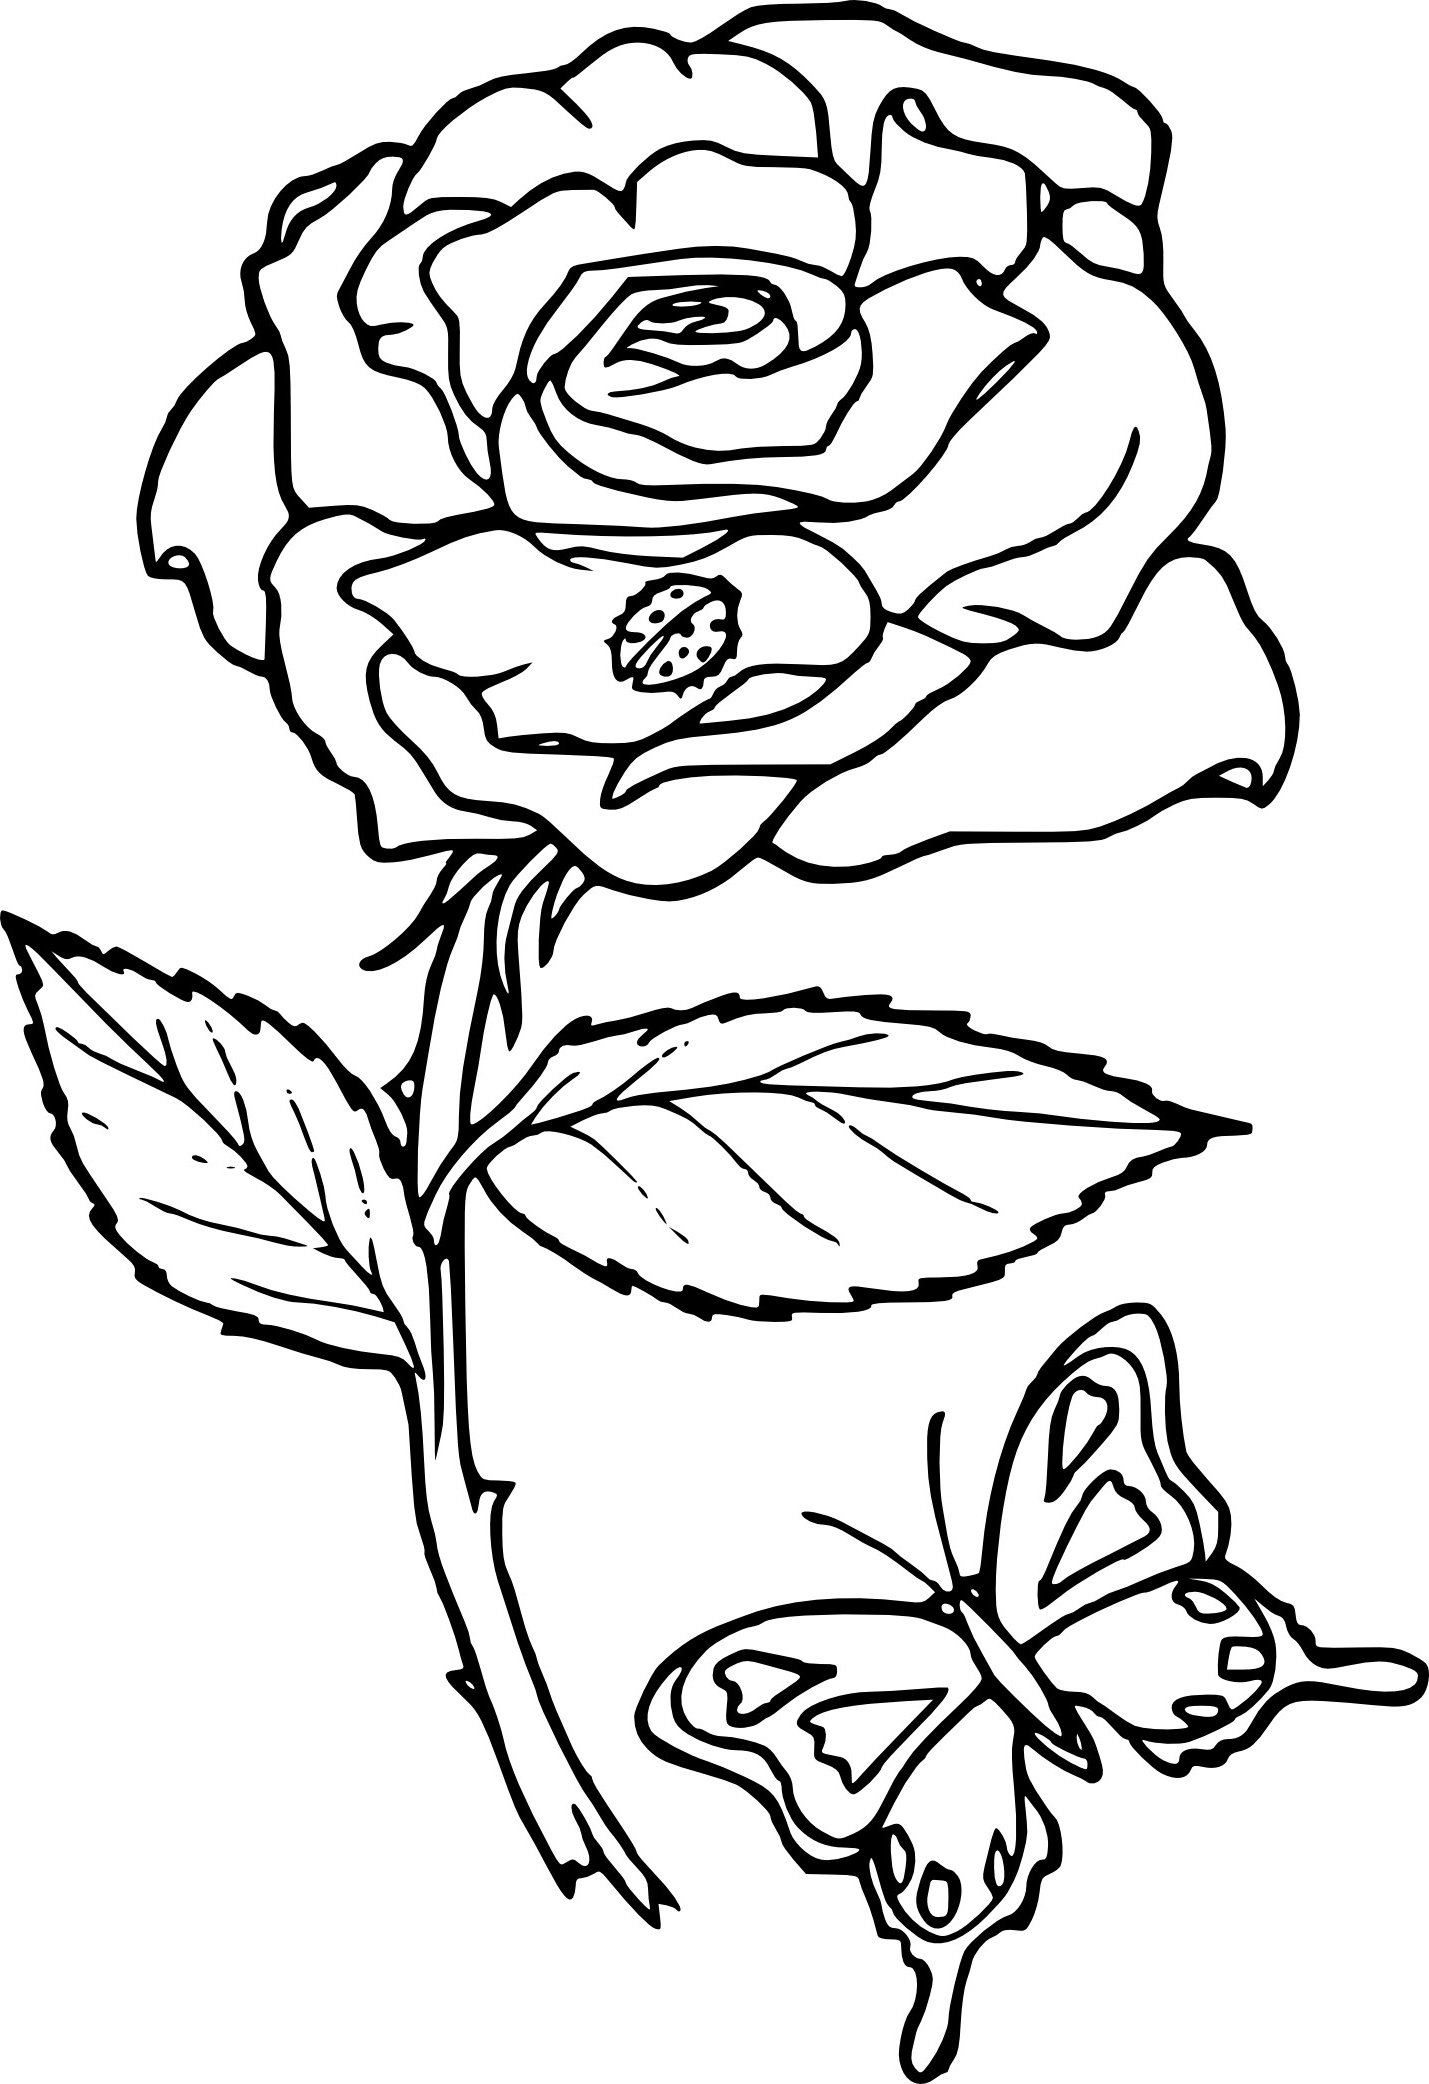 Dessin De Fleur à Imprimer Élégant Images Coloriage Rose Fleur à Imprimer